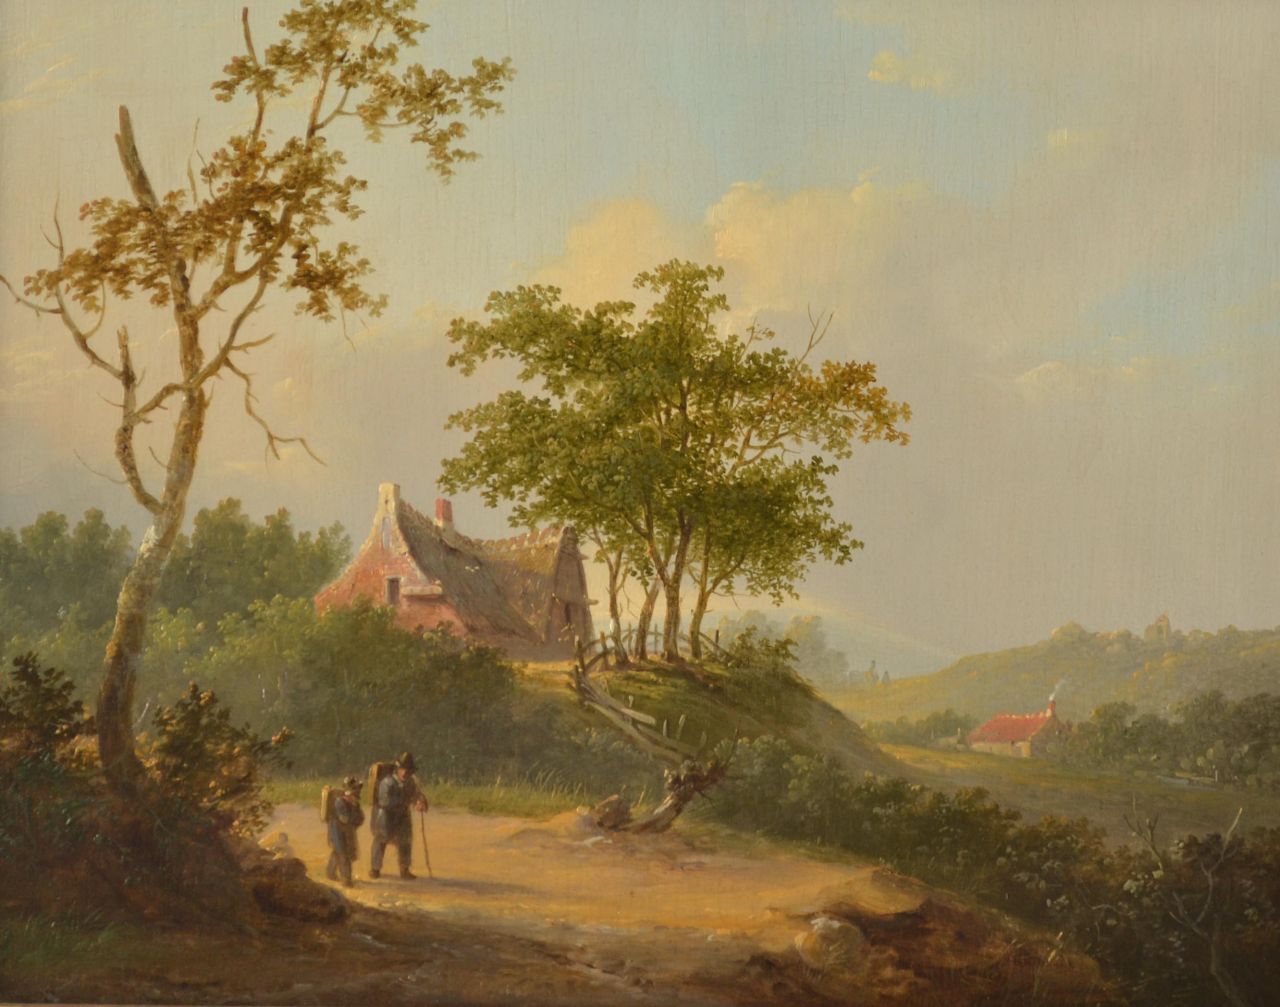 Stok J. van der | Jacobus van der Stok | Schilderijen te koop aangeboden | Reizigers in panoramisch zomerlandschap, olieverf op paneel 25,7 x 32,6 cm